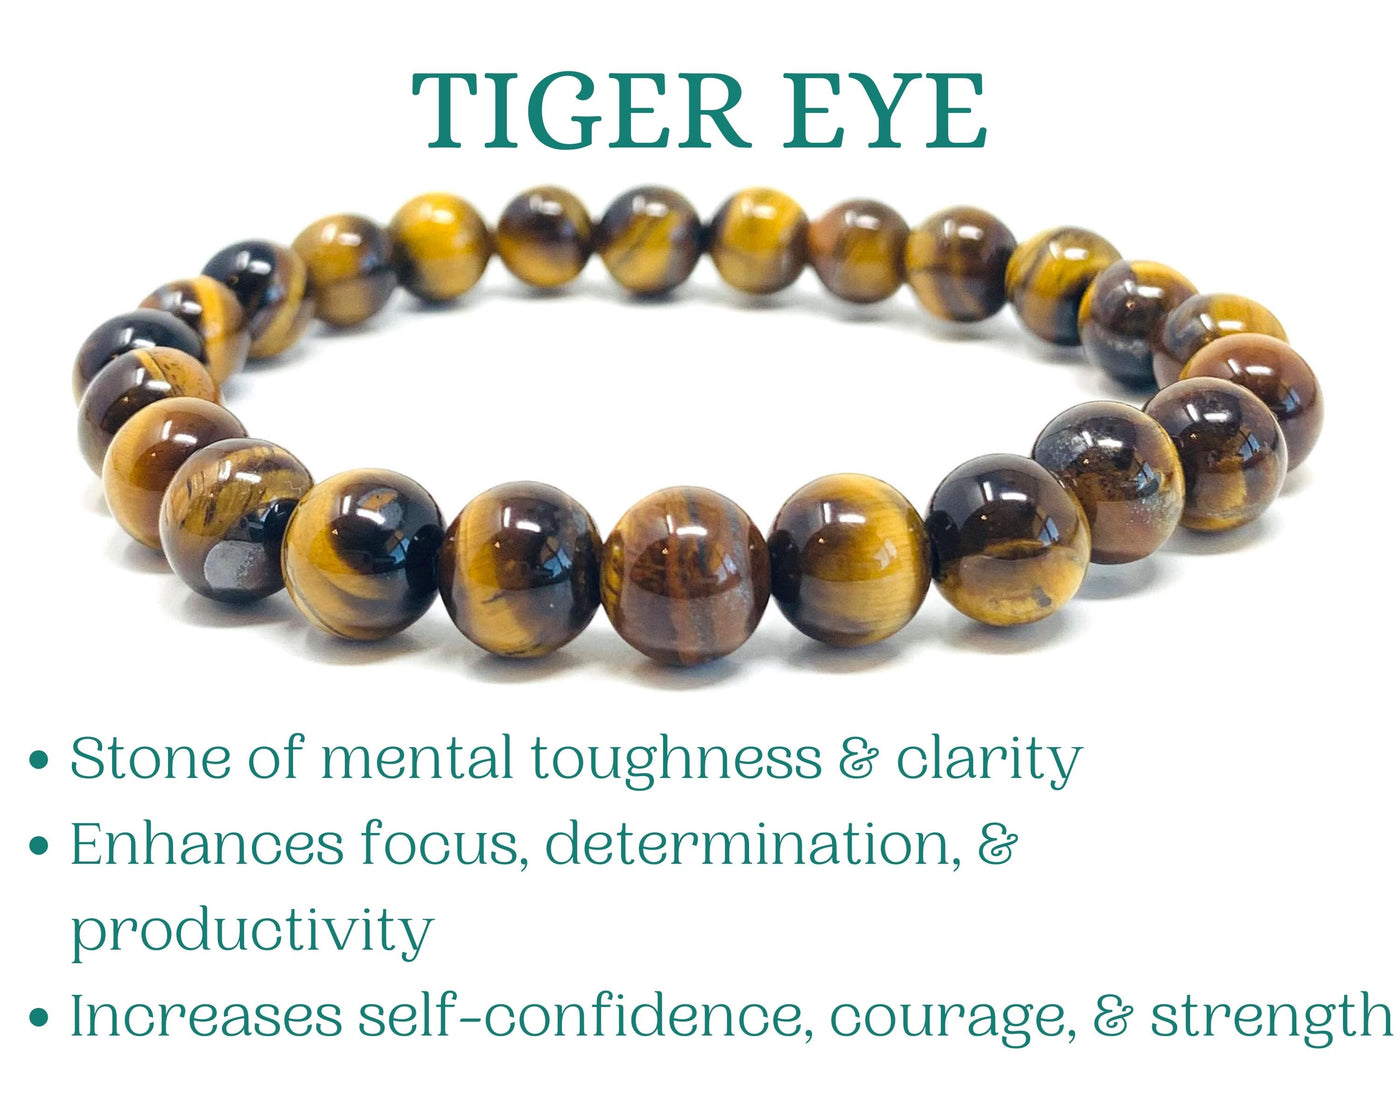 Tiger Eye Crystal Bracelet for Women, Men Bead Bracelet for Motivation Success Focus Courage Strength | Wholesale Crystal Bead Bracelets